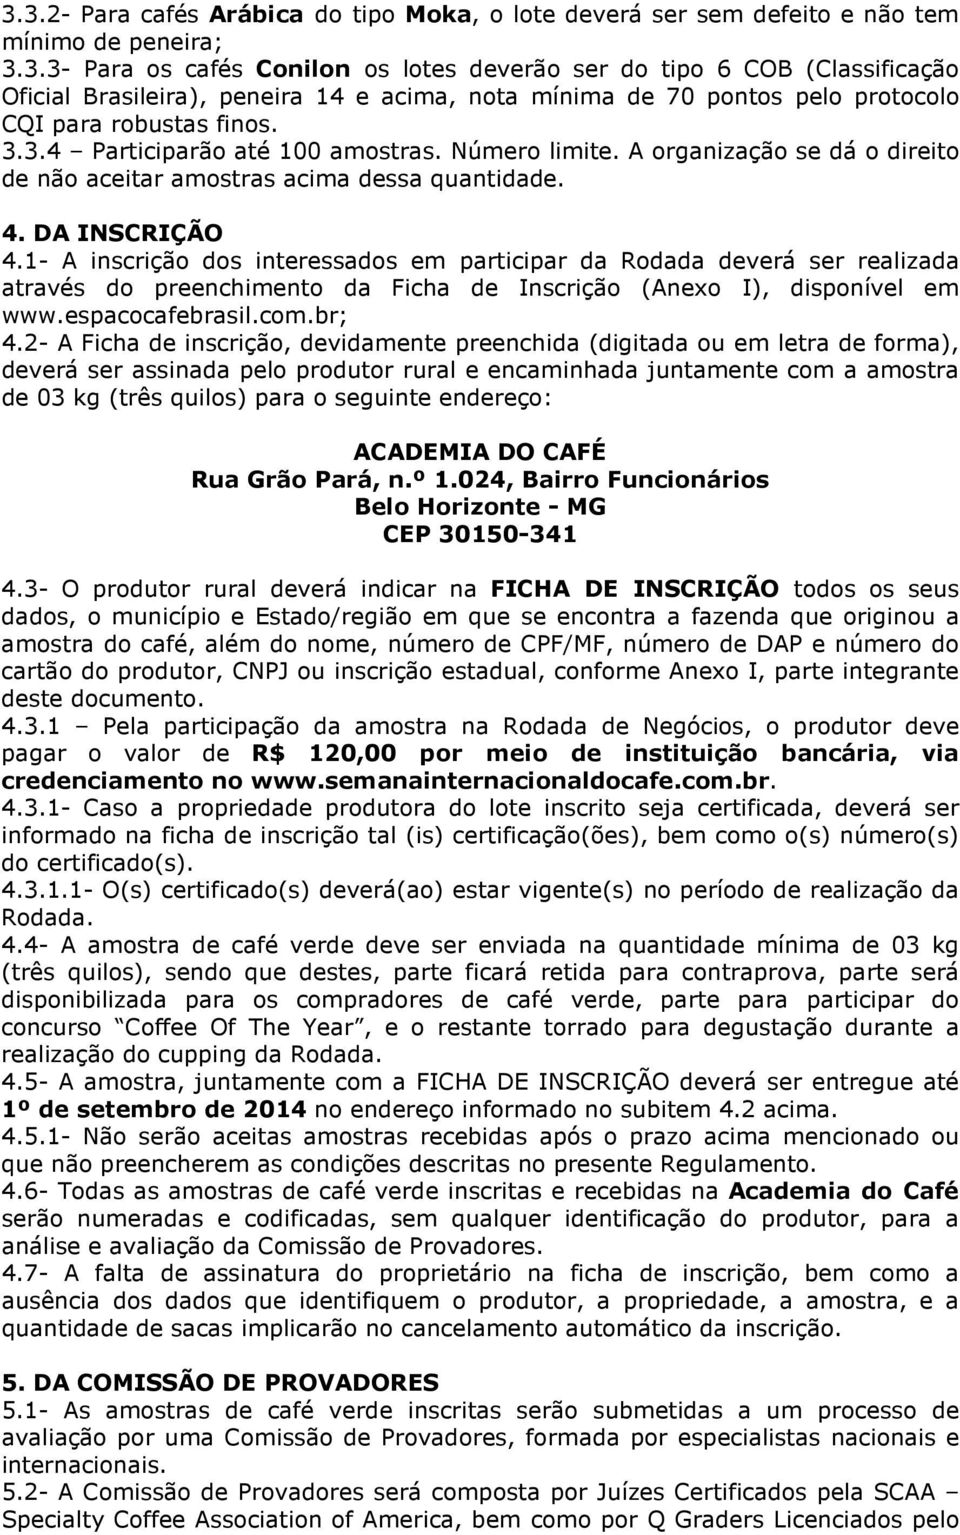 1- A inscrição dos interessados em participar da Rodada deverá ser realizada através do preenchimento da Ficha de Inscrição (Anexo I), disponível em www.espacocafebrasil.com.br; 4.